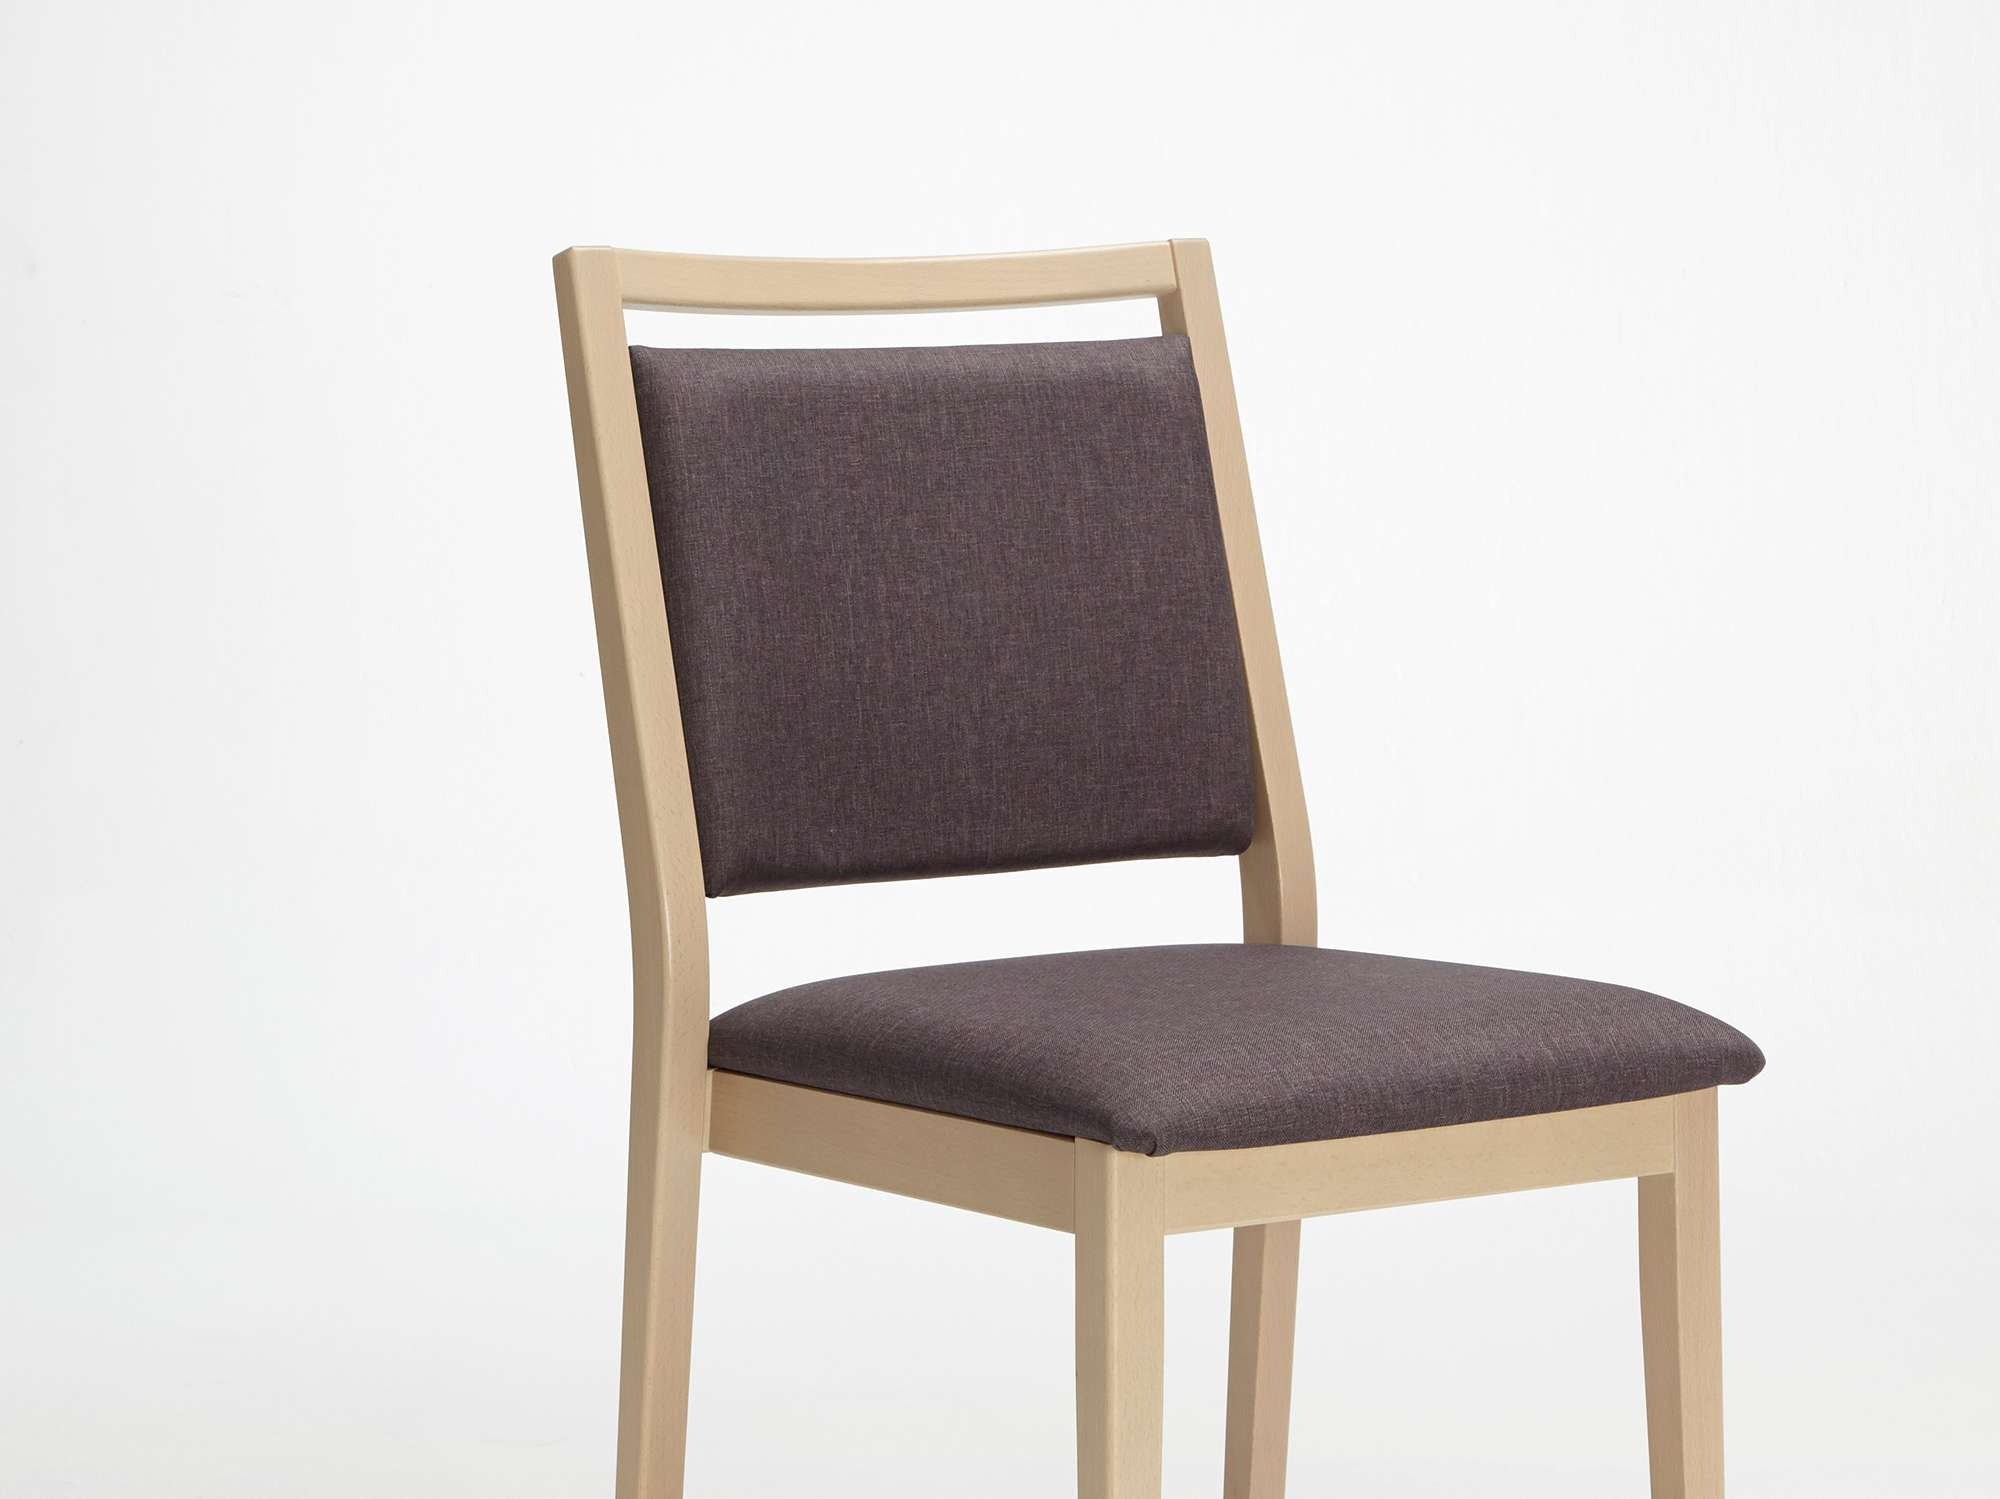 Modèle Mavo version chaise empilable sans accoudoirs